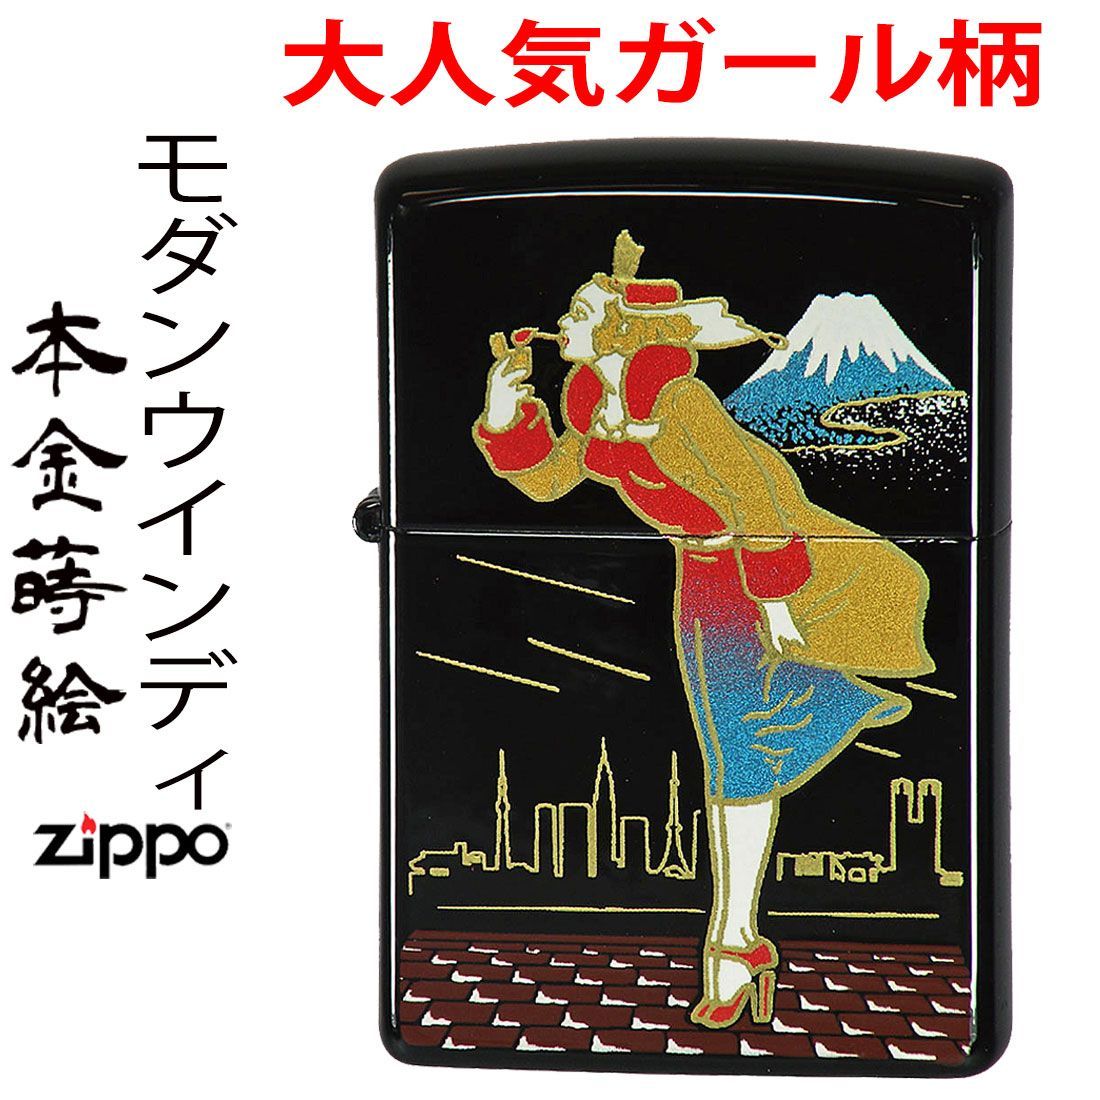 ジッポー ライター zippo ZIPPO 当店在庫限りで終了本金蒔絵 モダン 